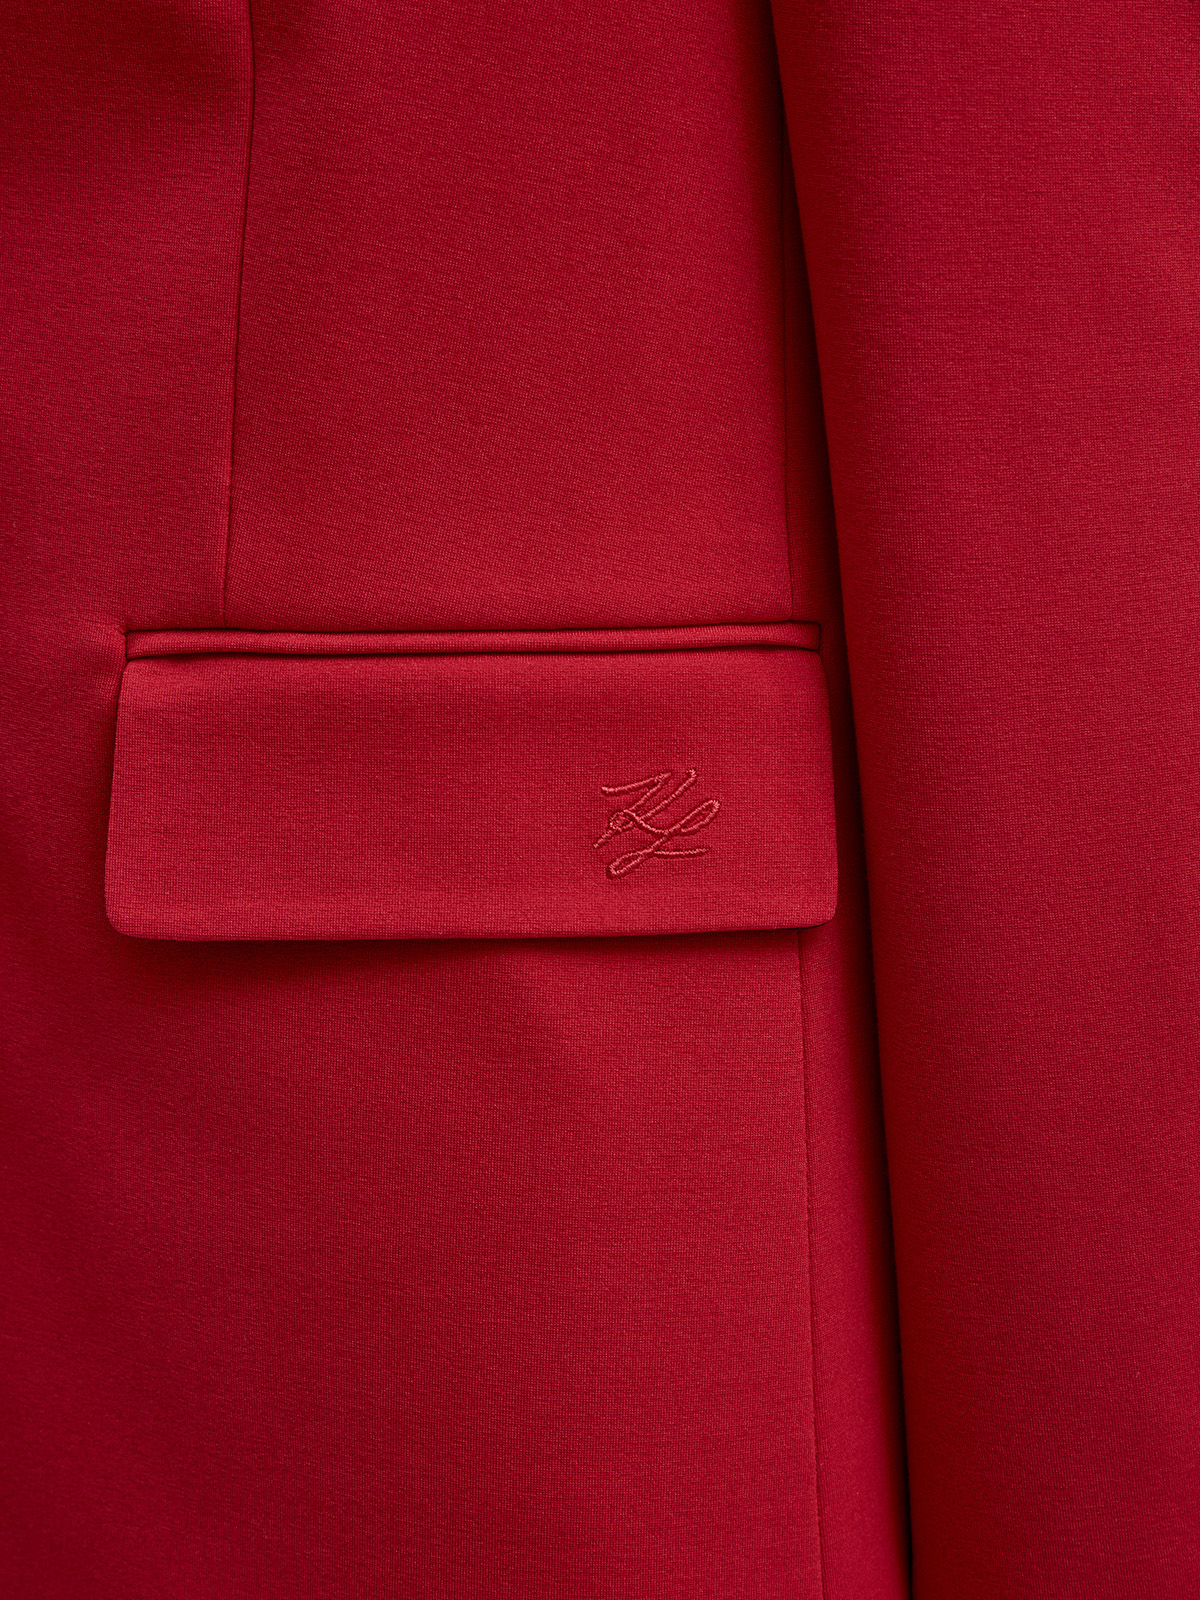 Однобортный жакет из гладкой ткани Punto с вышитым логотипом KARL LAGERFELD, цвет красный, размер M;L;XL - фото 5